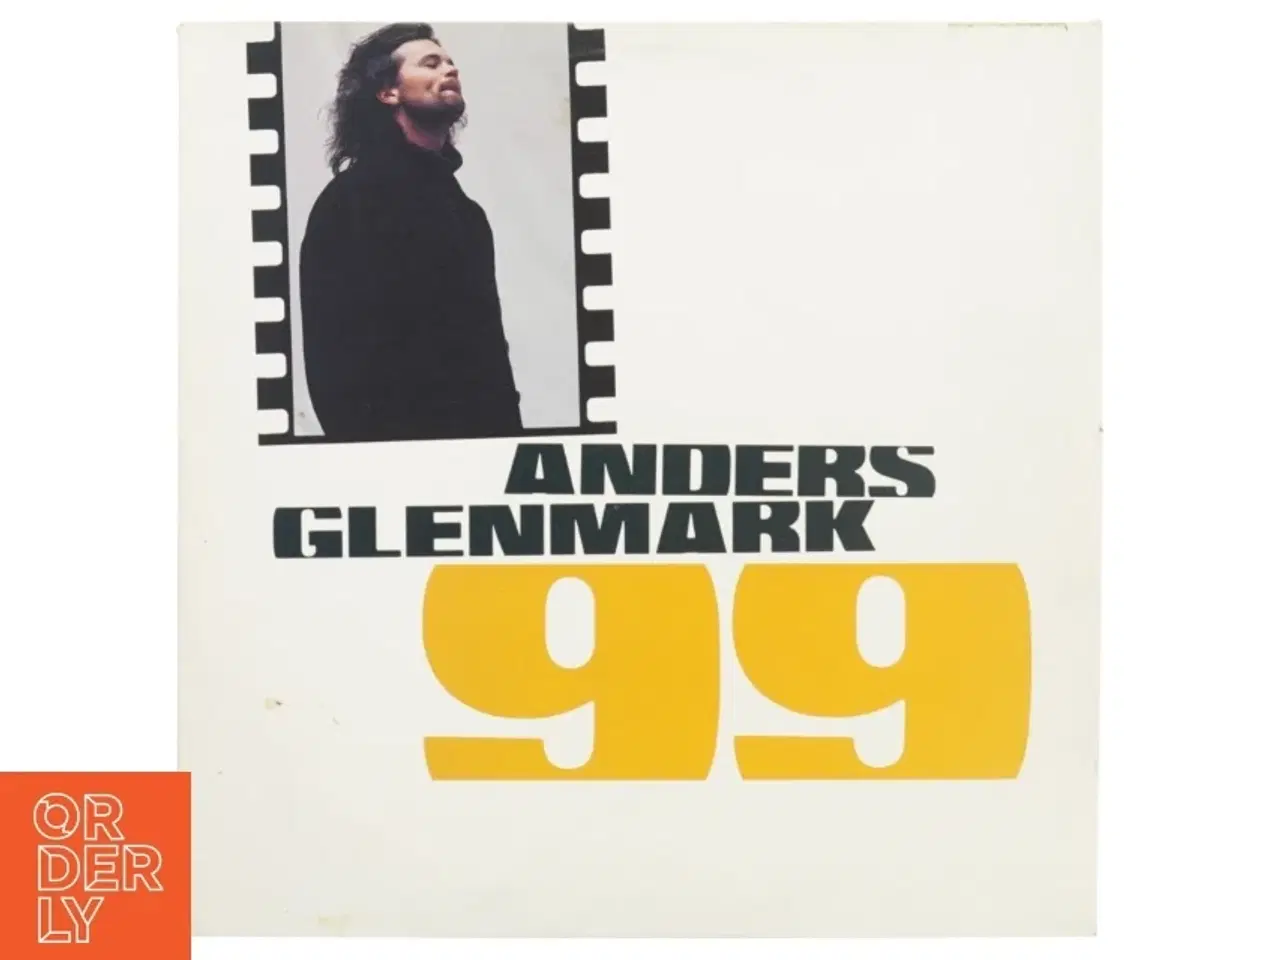 Billede 1 - Lp plade anders glenmark 99 fra The Record Station Stockholm (str. 31 x 31 cm)